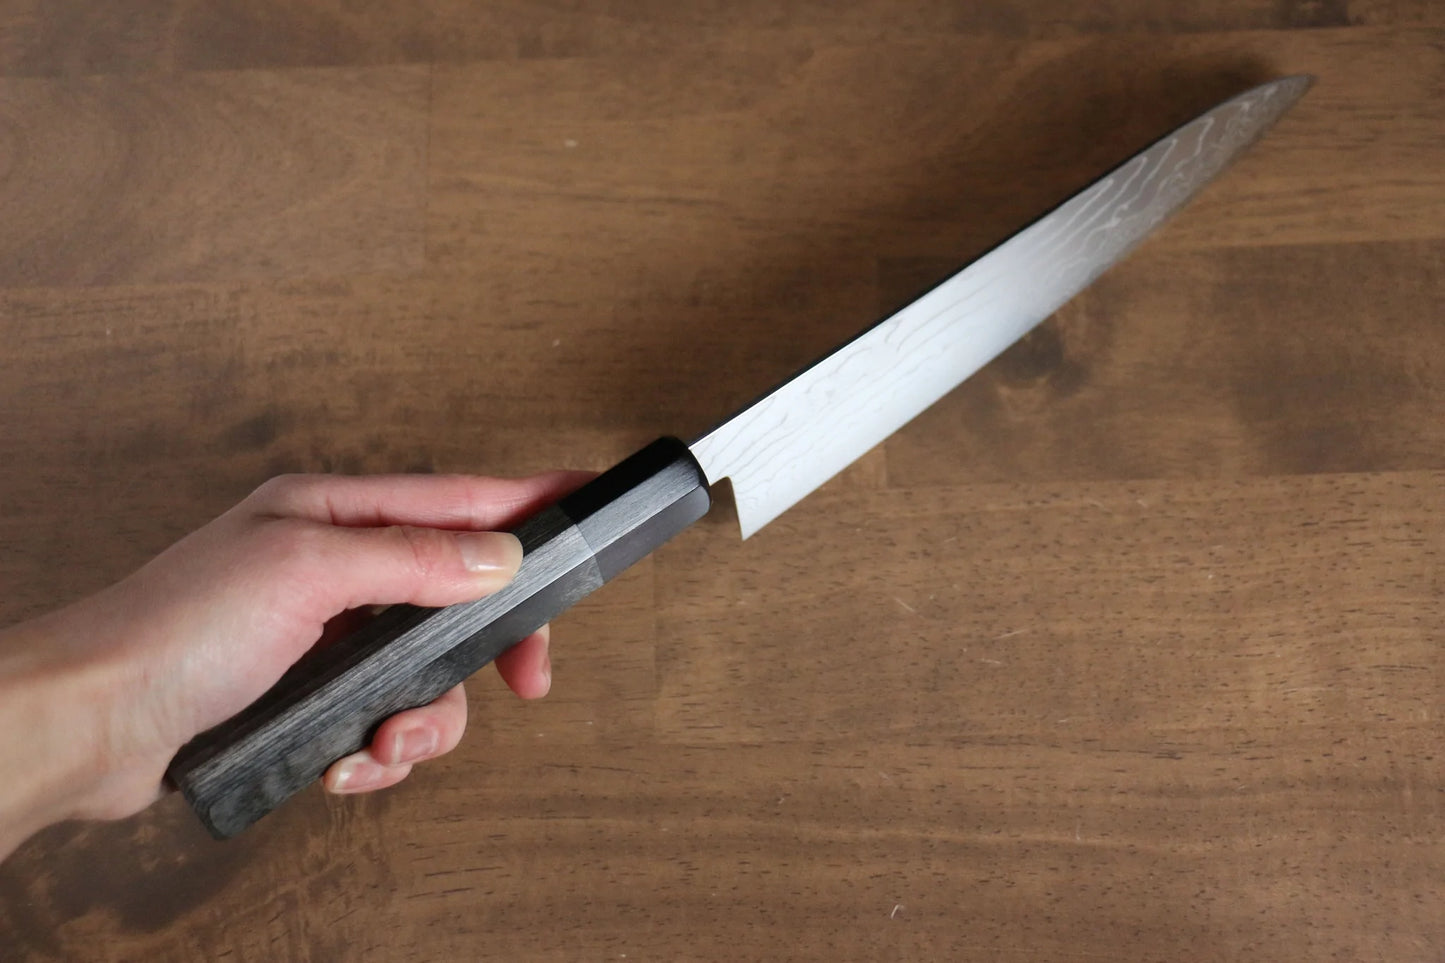 Kajin-Marke. Spezial-Kobaltstahl, Damaststahl, Gyuto-Mehrzweckmesser, japanisches Messer, 210 mm, grauer Pakka-Holzgriff